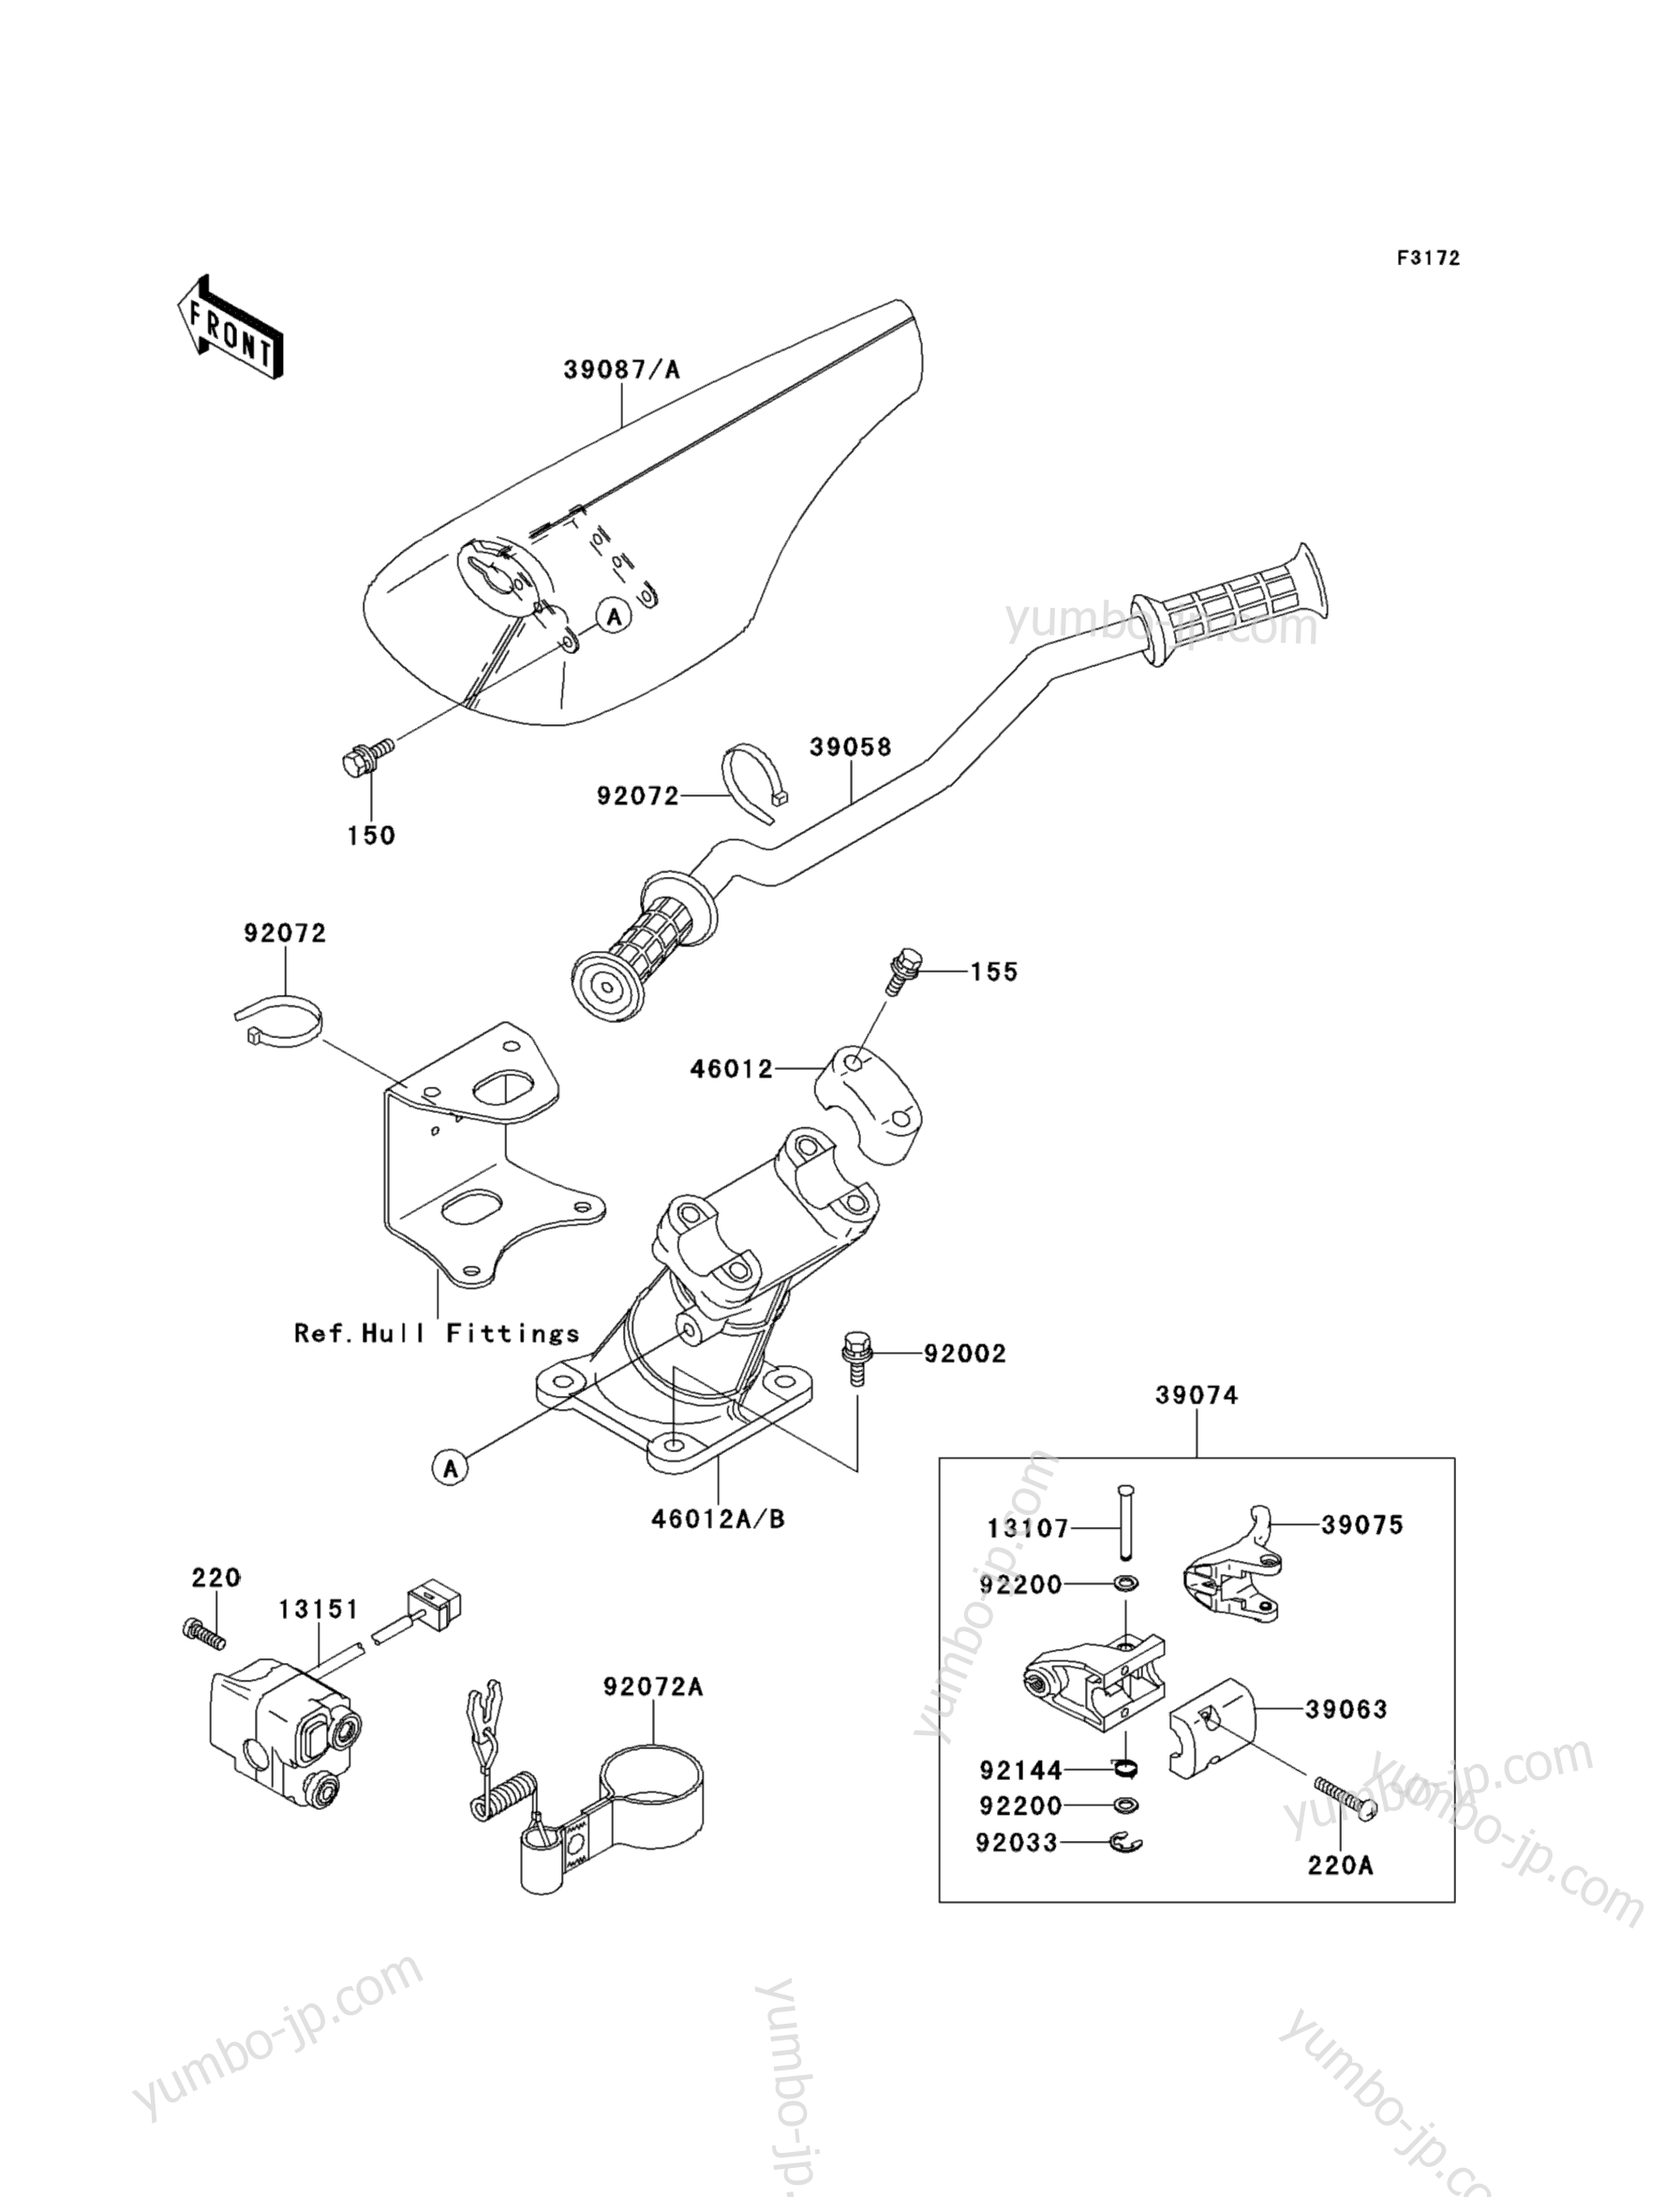 Румпель (рукоятка управления) для гидроциклов KAWASAKI JET SKI SUPER SPORTS XI (JH750-F1) 1996 г.